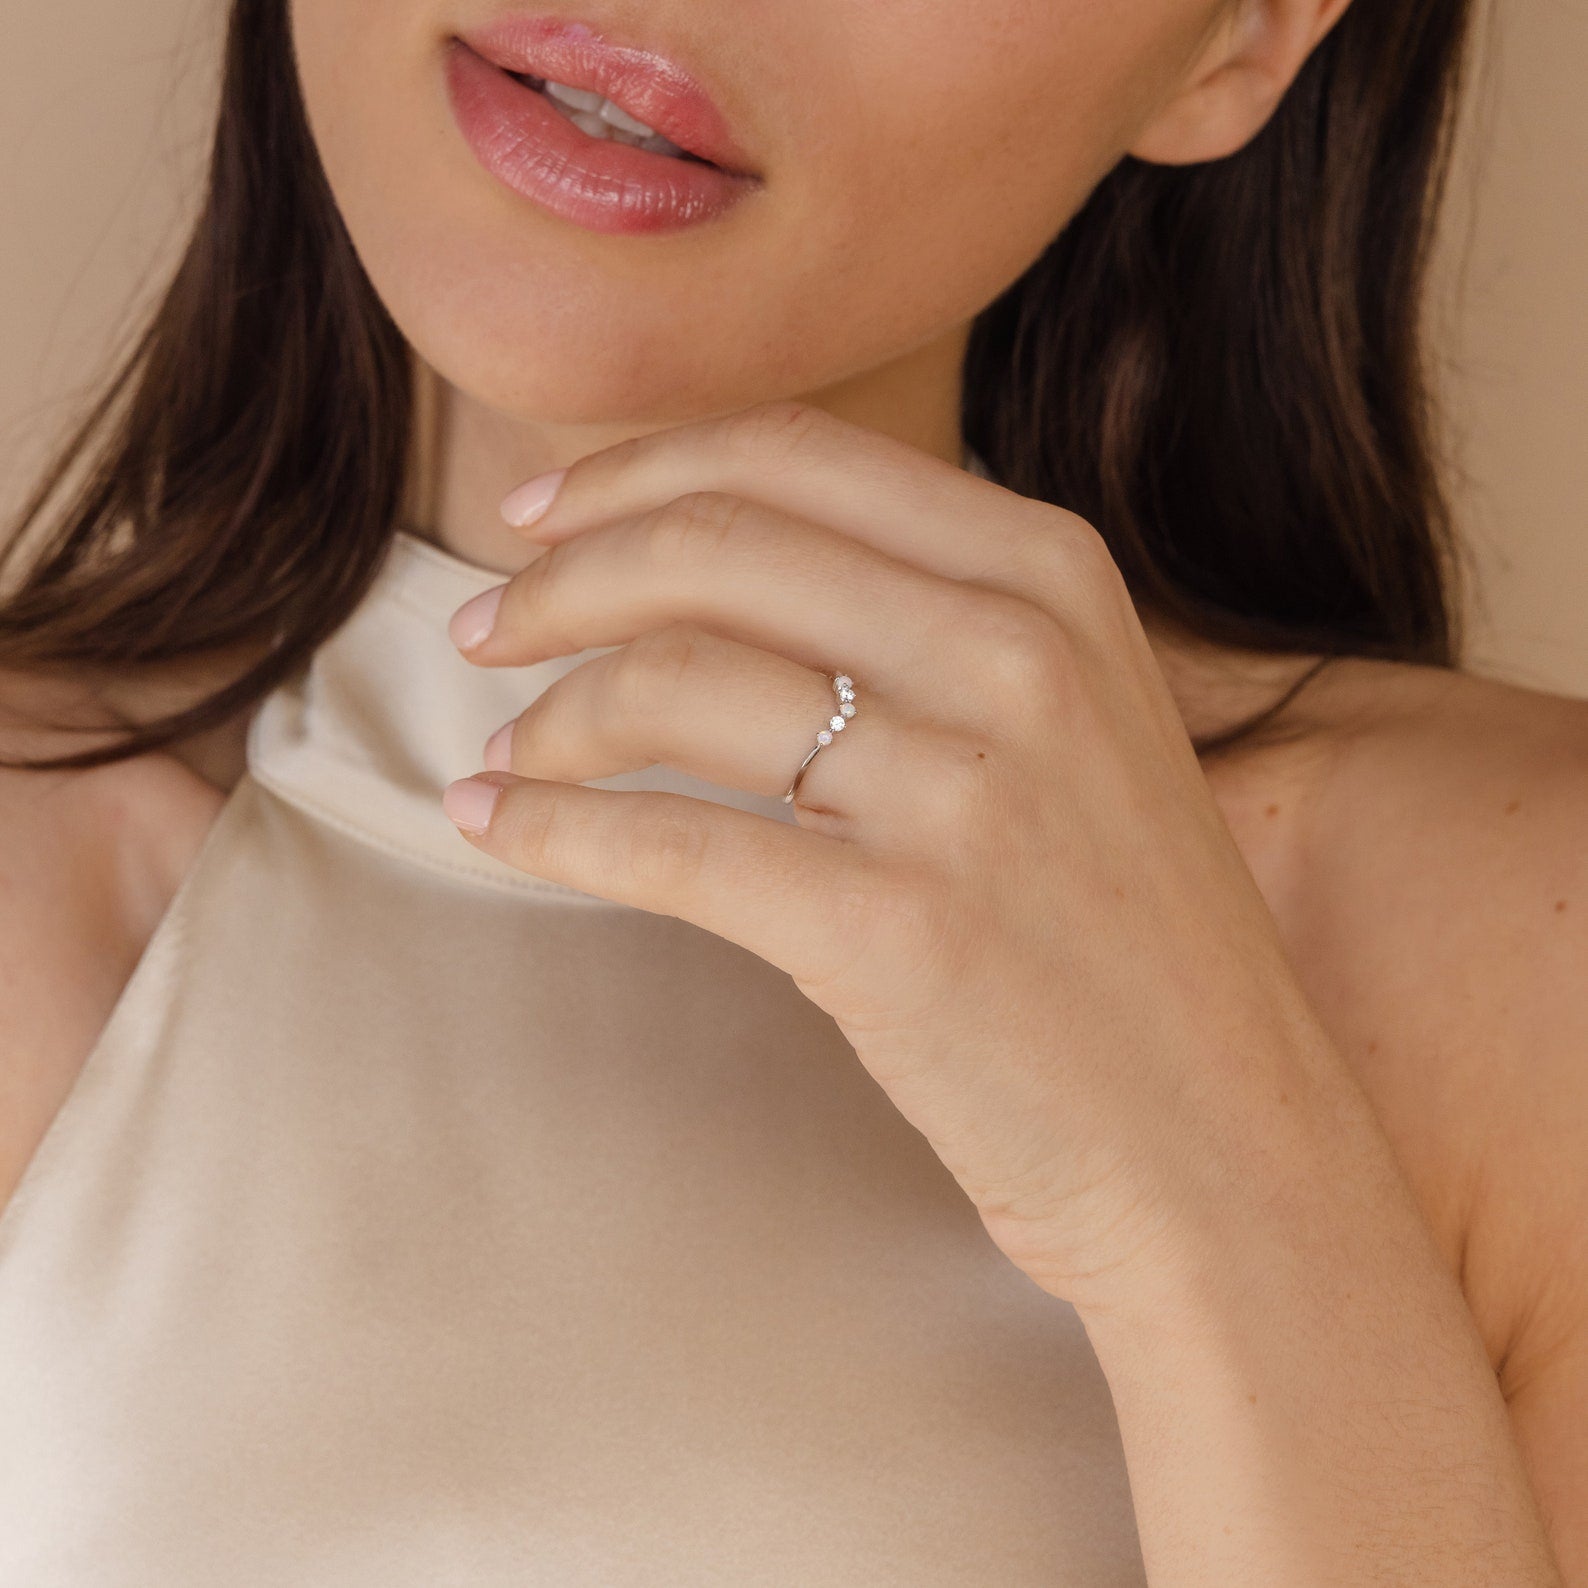 Layla Opal Diamond Ring